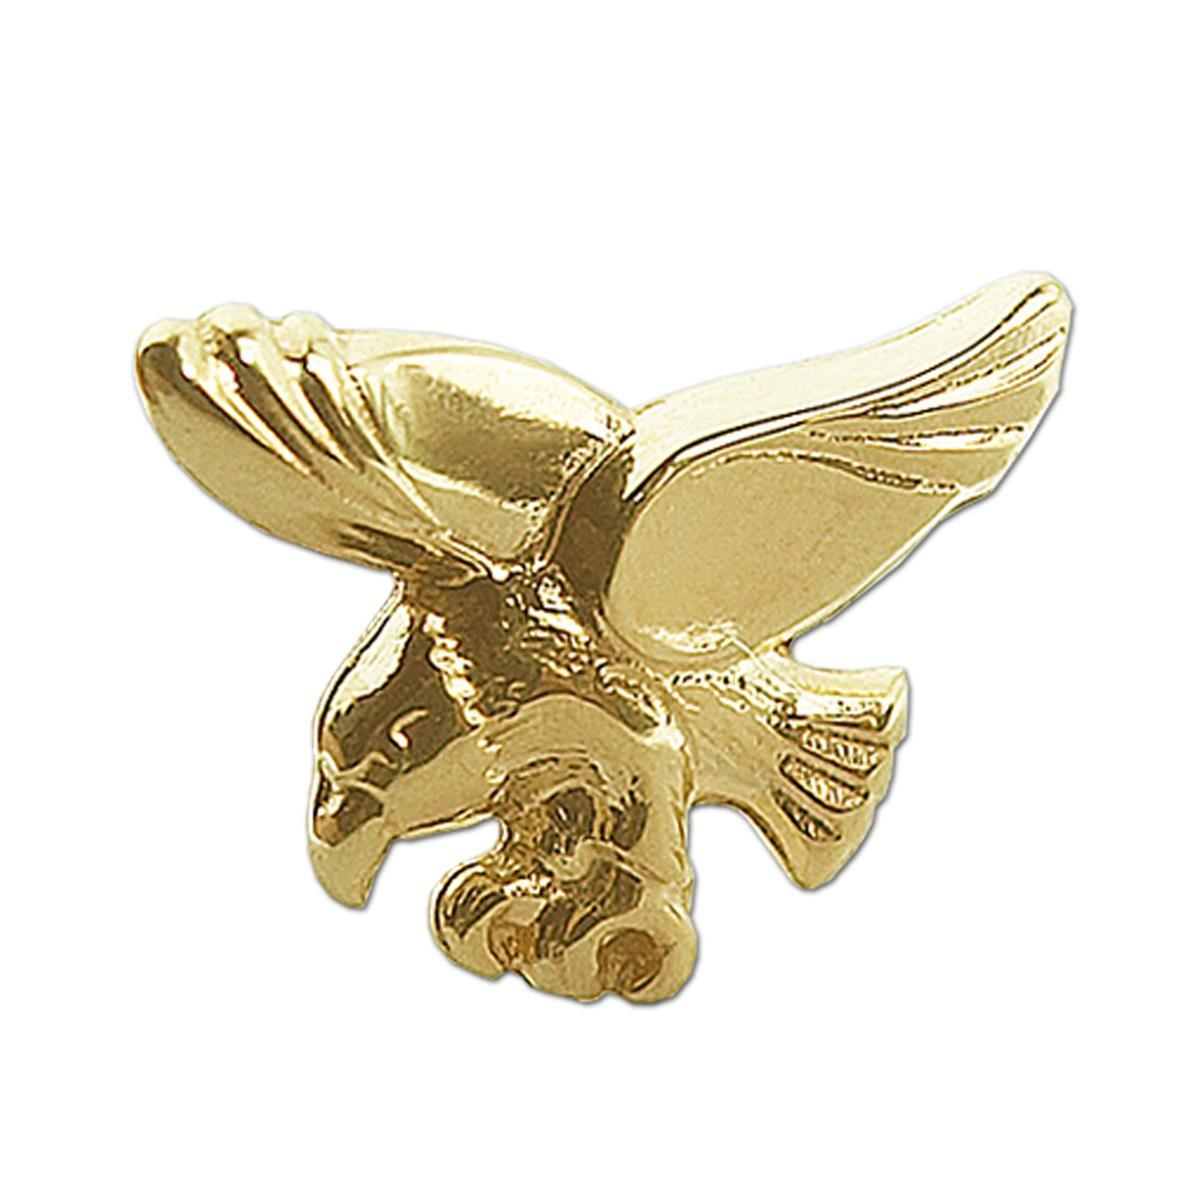 Goldener einzelner Single Ohrstecker 9 x 7 mm fliegender Adler glänzend 333 GOLD 8 KARAT